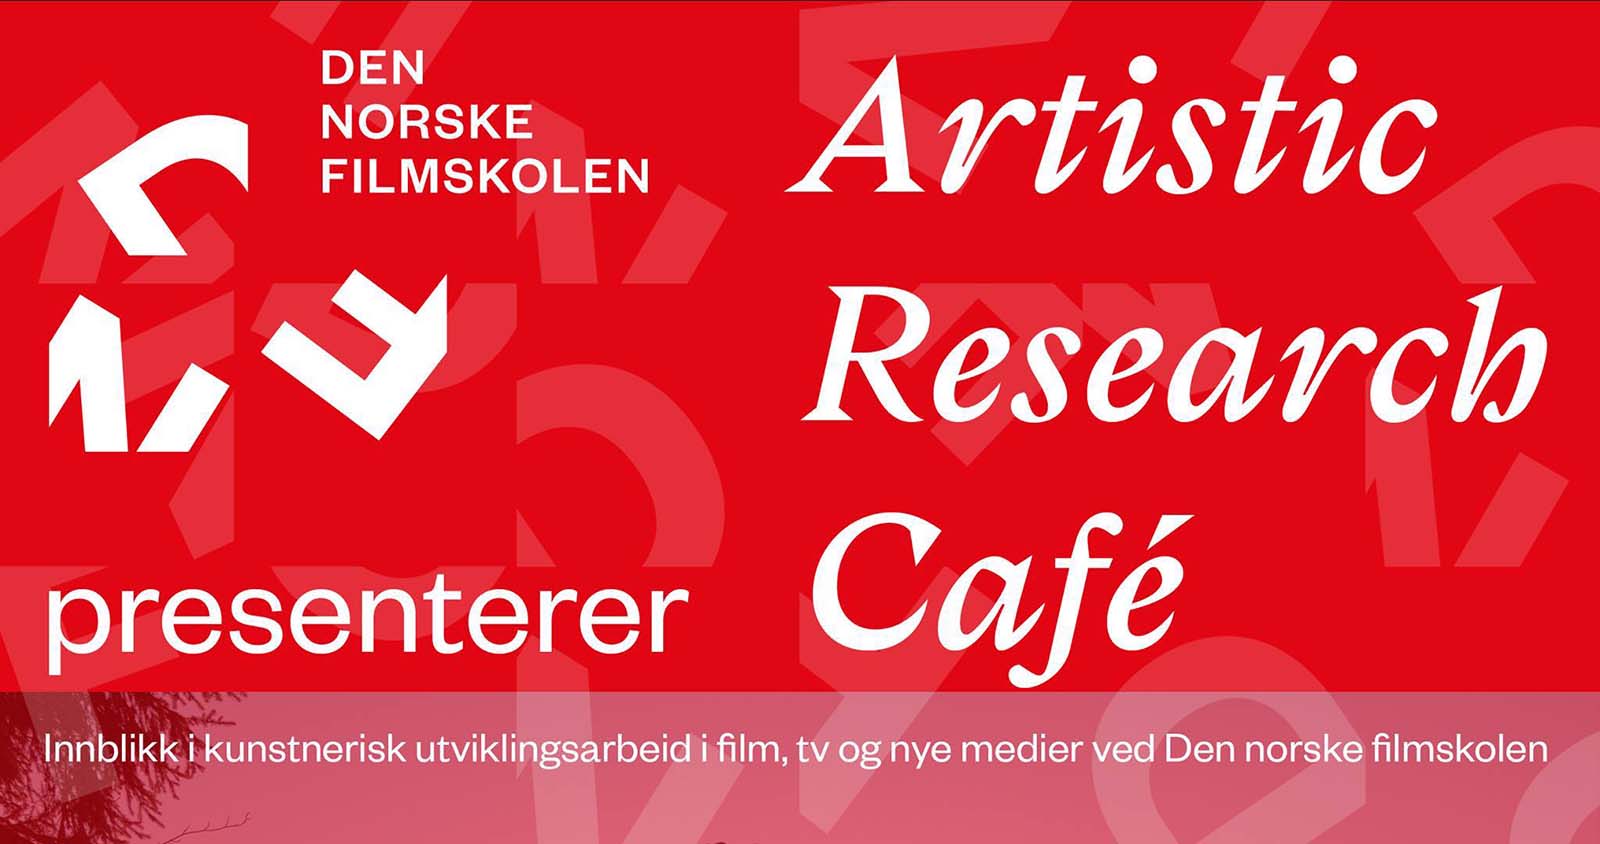 Banner Artistic Cafe, Den norske filmskolen